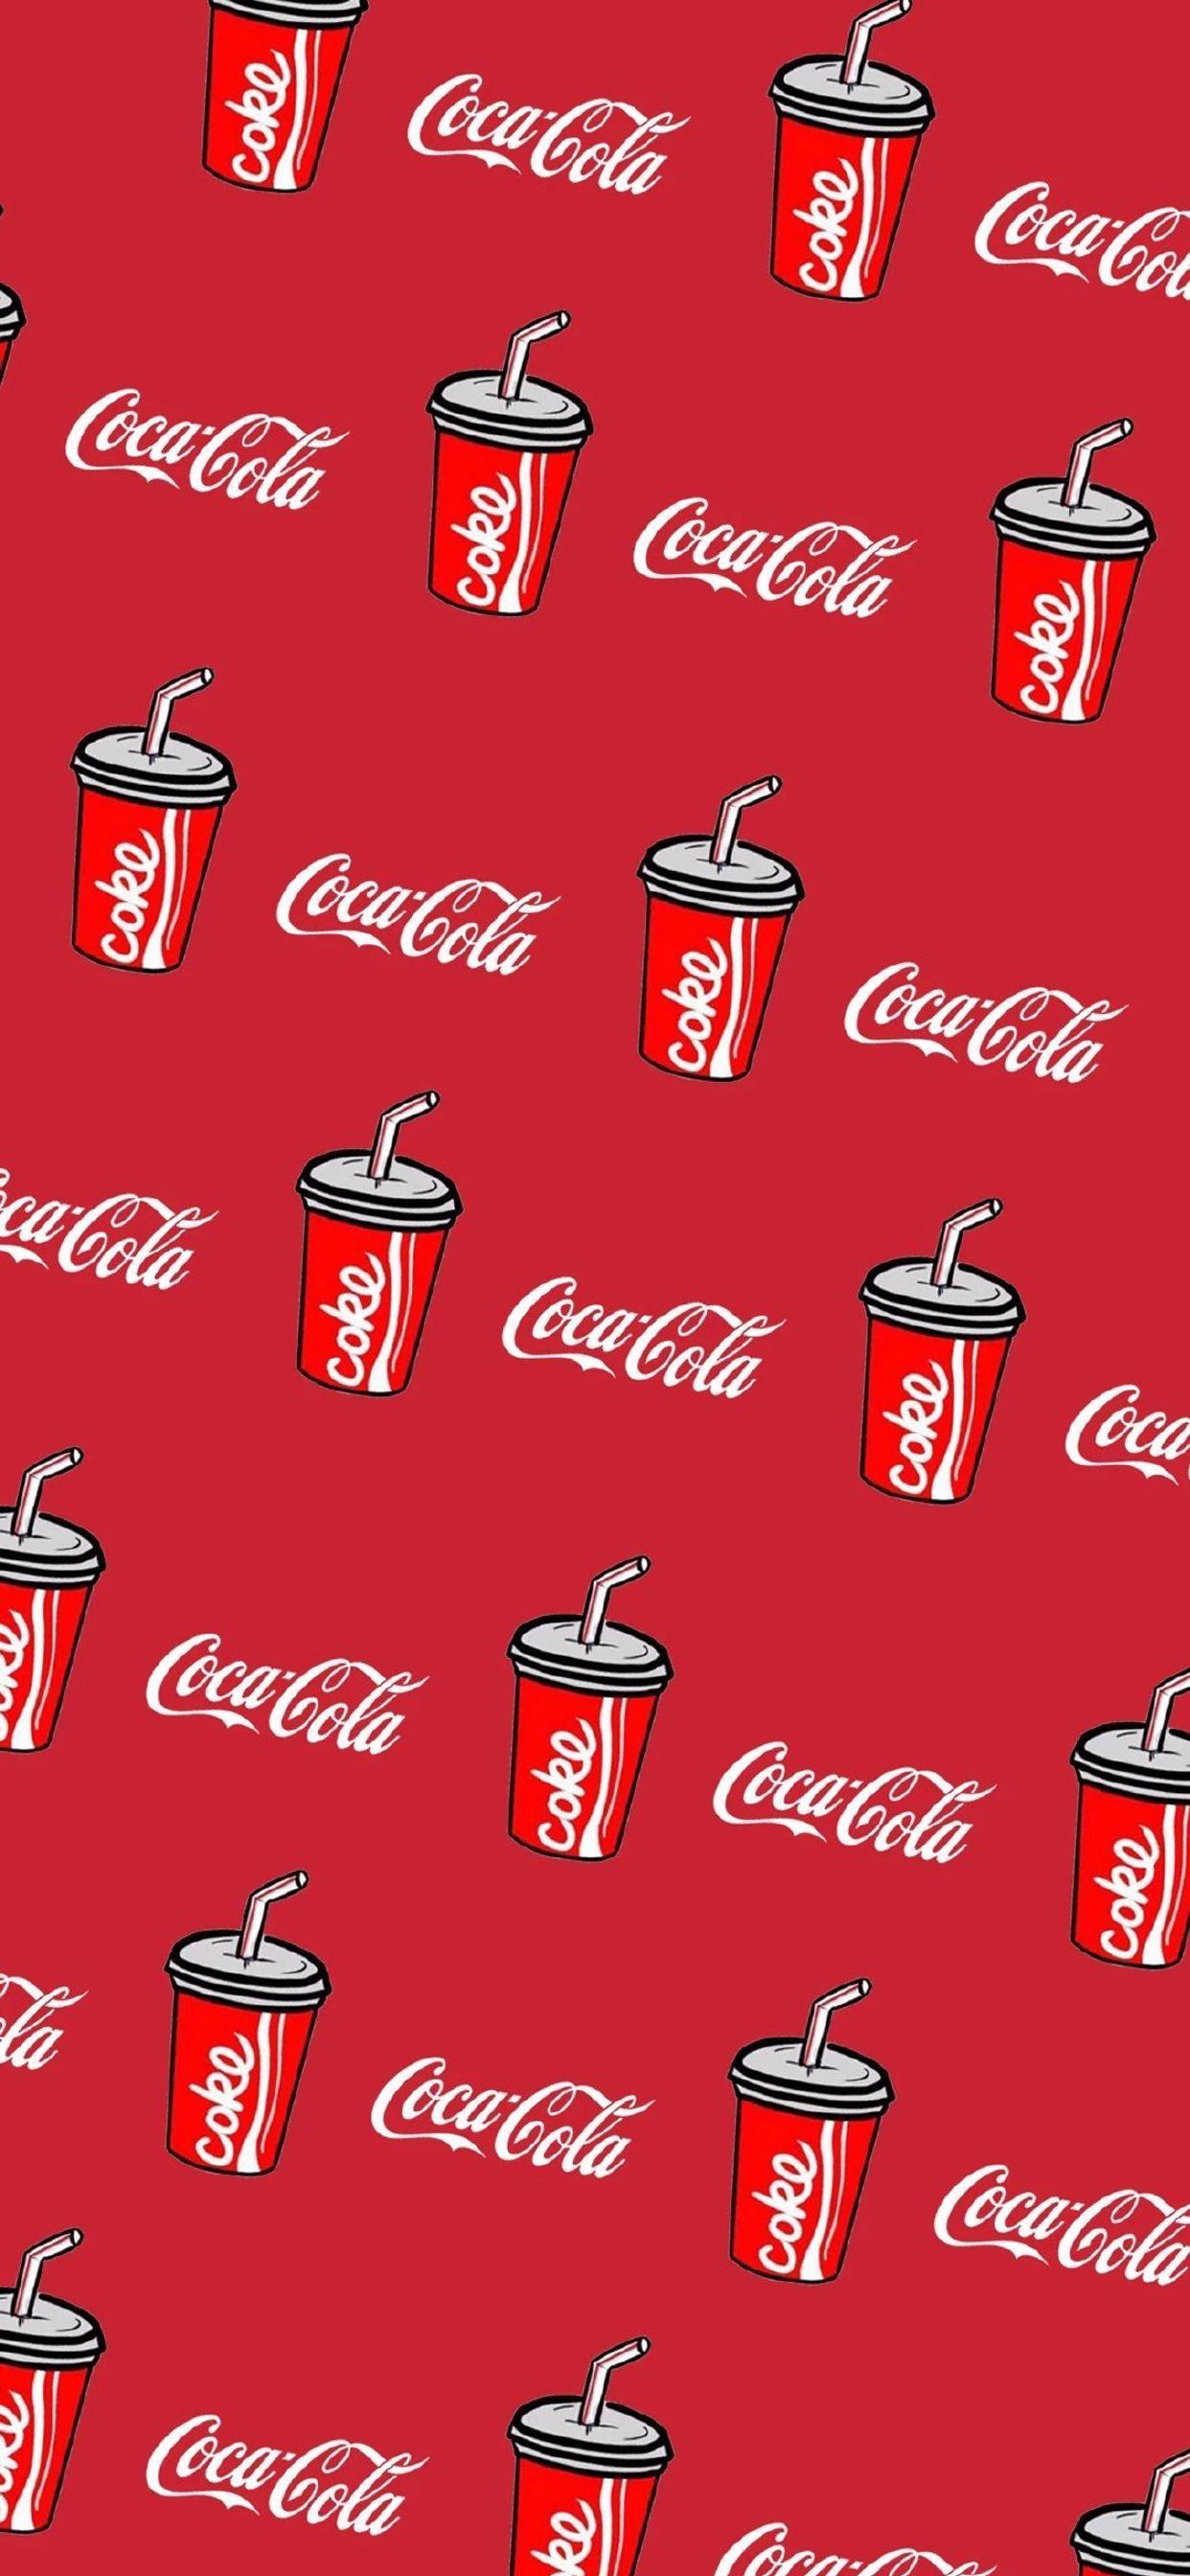 有关于可口可乐的手机壁纸吗